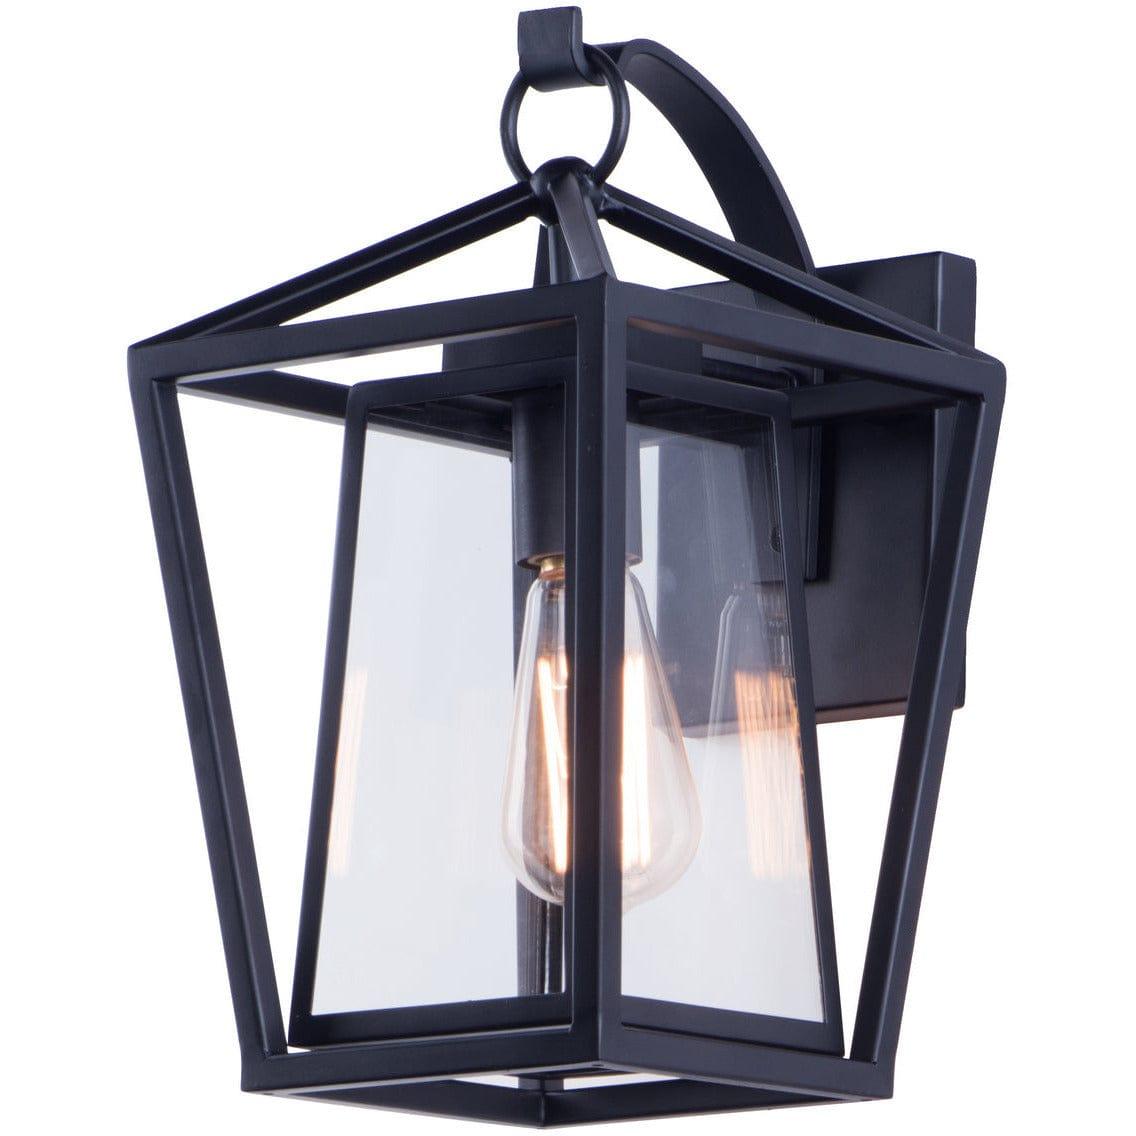 Maxim Lighting - Artisan Outdoor Wall Lantern - 3174CLBK | Montreal Lighting & Hardware